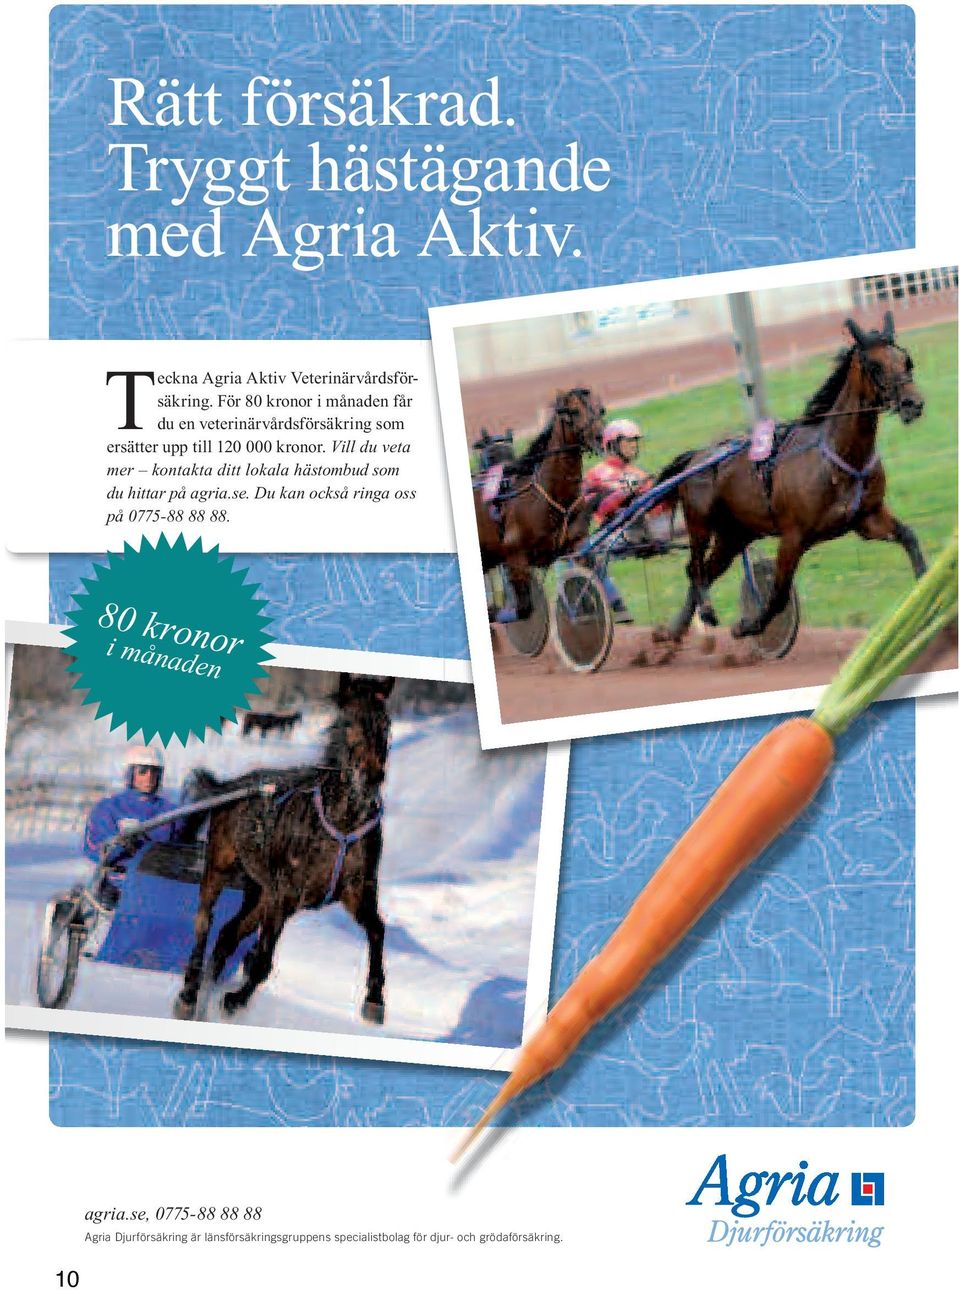 Vill du veta mer kontakta ditt lokala hästombud som du hittar på agria.se.